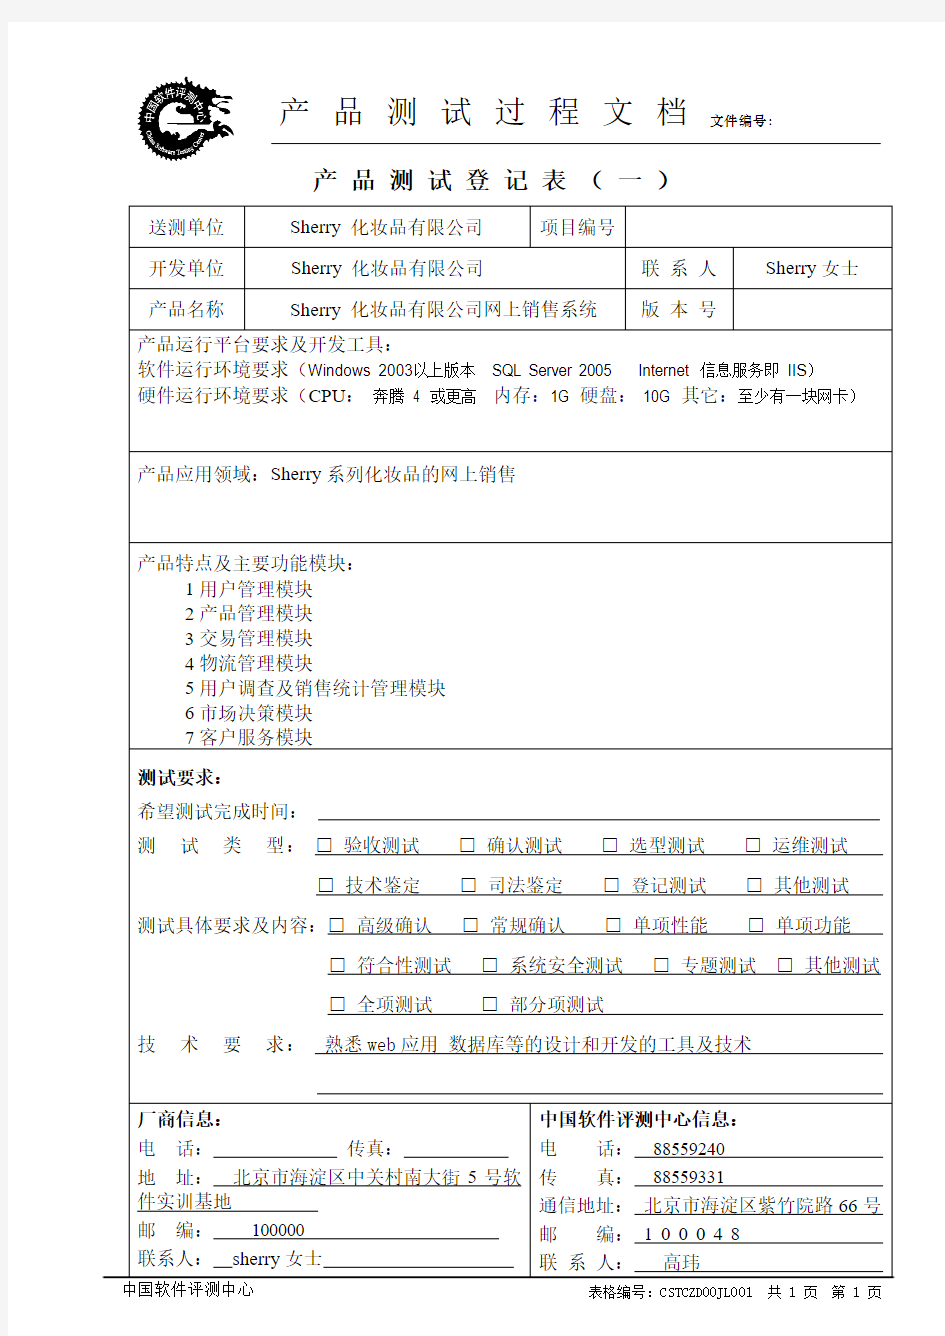 中国软件评测中心产品测试登记表